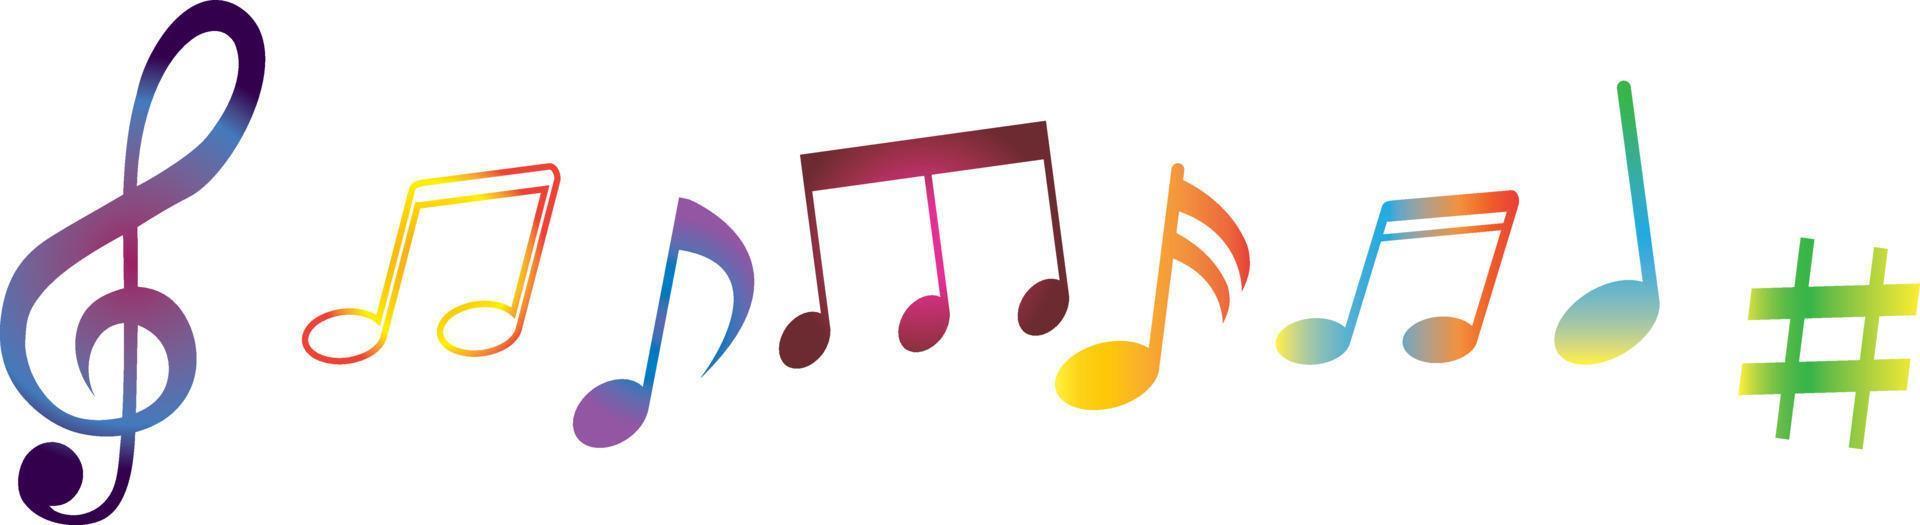 färgrik musik notera symboler av annorlunda Färg rosa, röd, orange, gul, grön, blå, cyan, lila, violett. hand målad vattenfärg skiss, isolerat ClipArt element för design, mönster, klistermärken. vektor